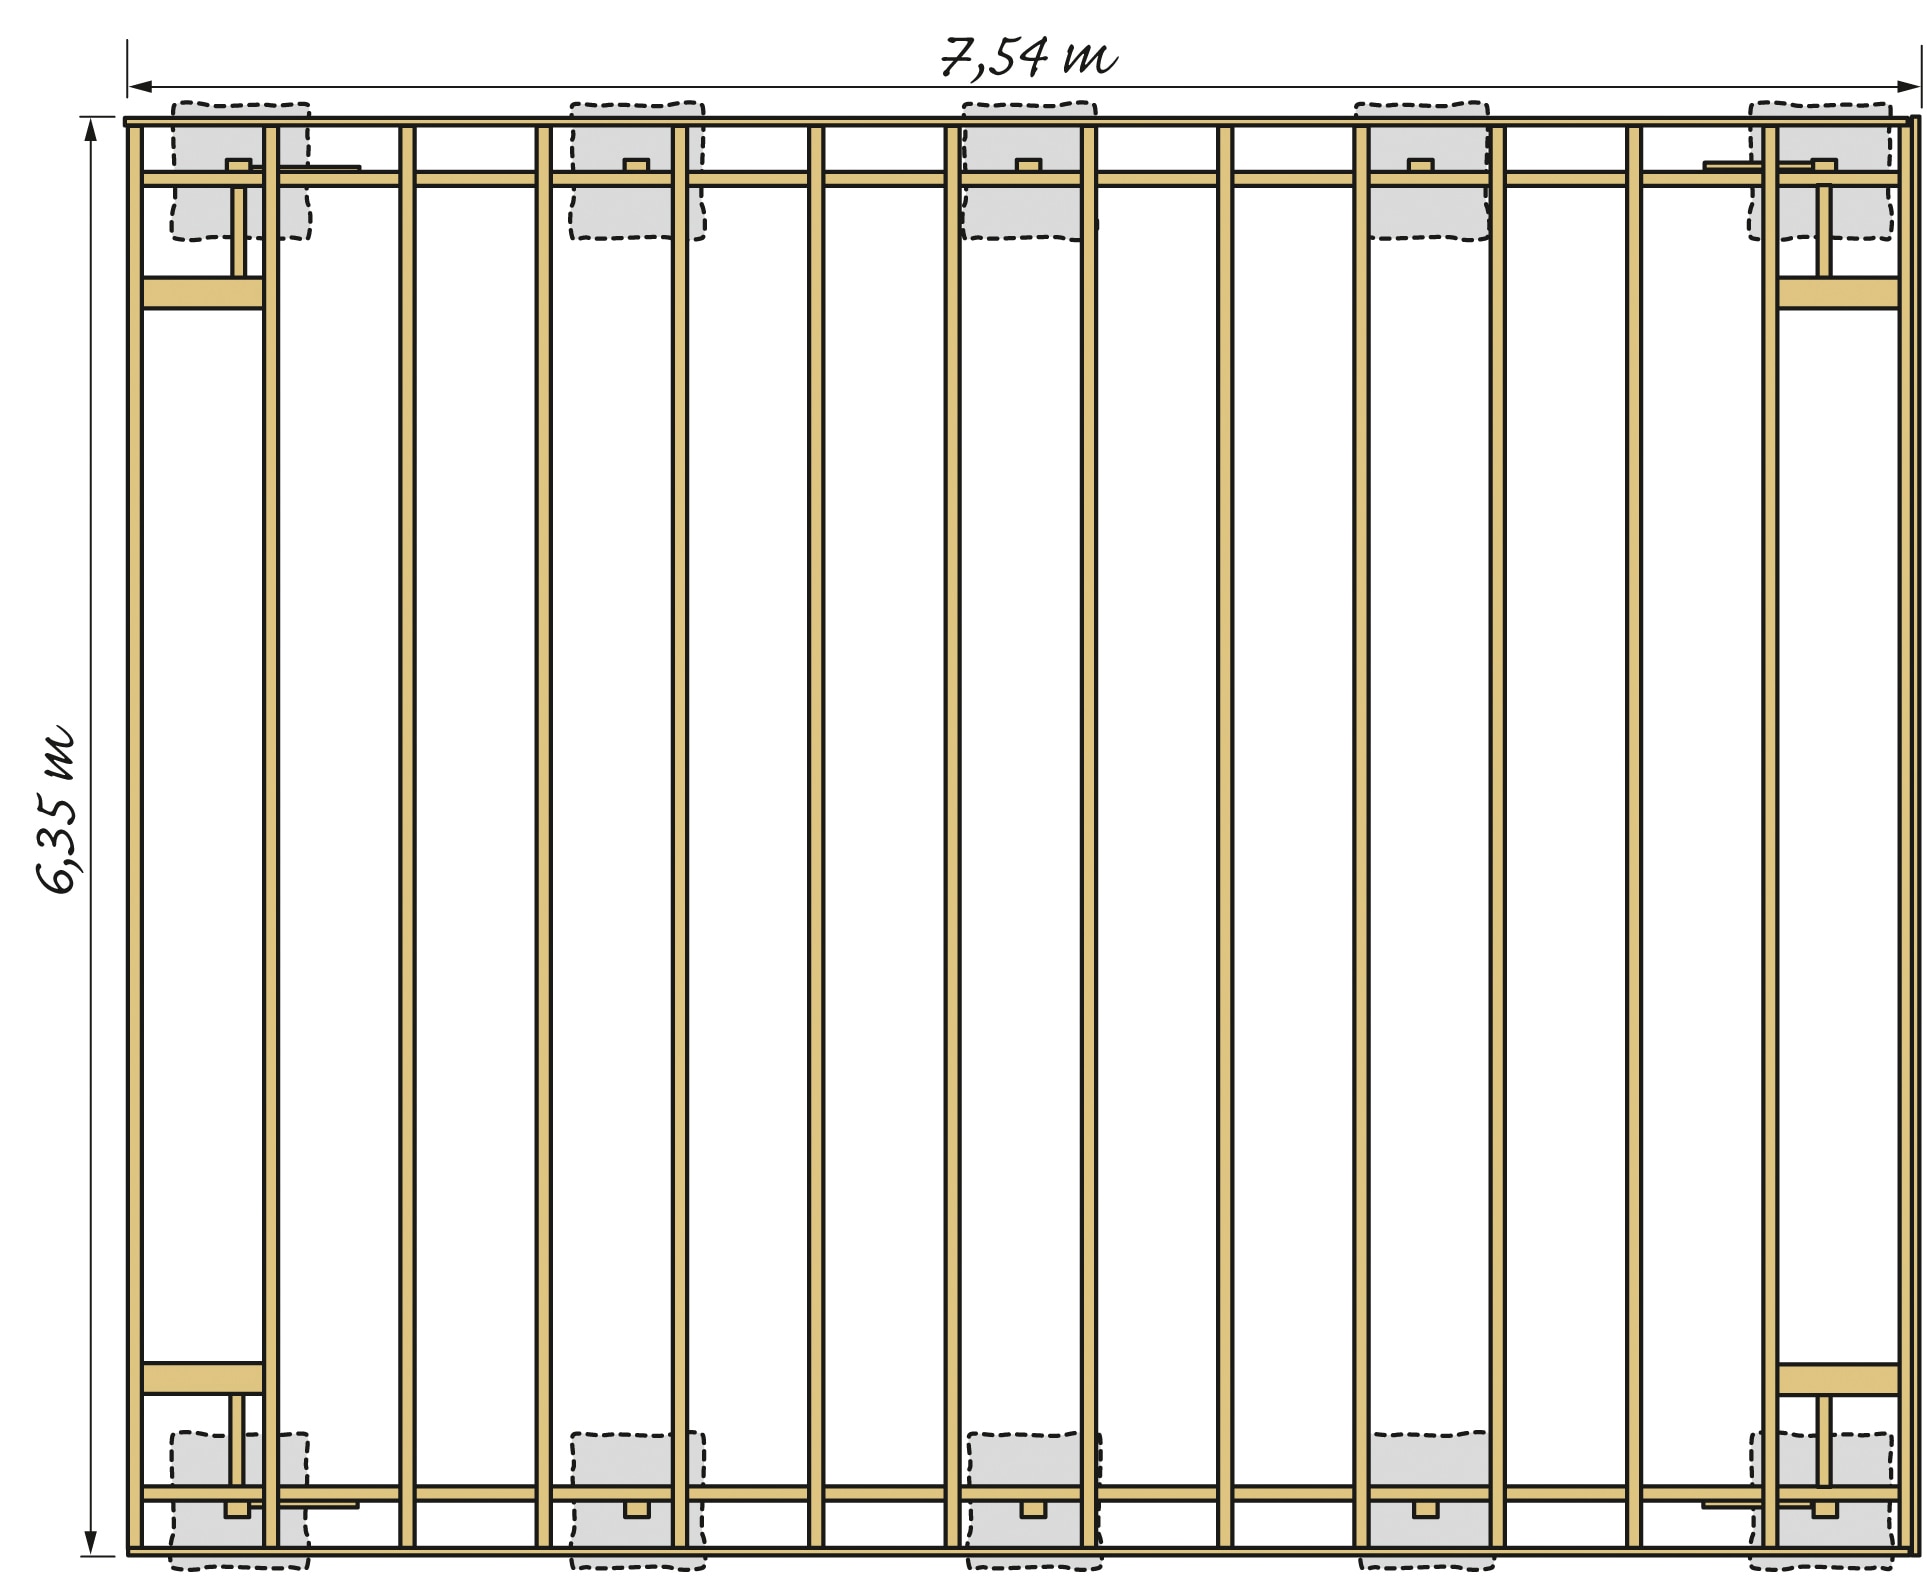 Kiehn-Holz Doppelcarport »KH 330 / KH 331«, Holz, 561 cm, weiß, Stahl-Dach, versch. Farben